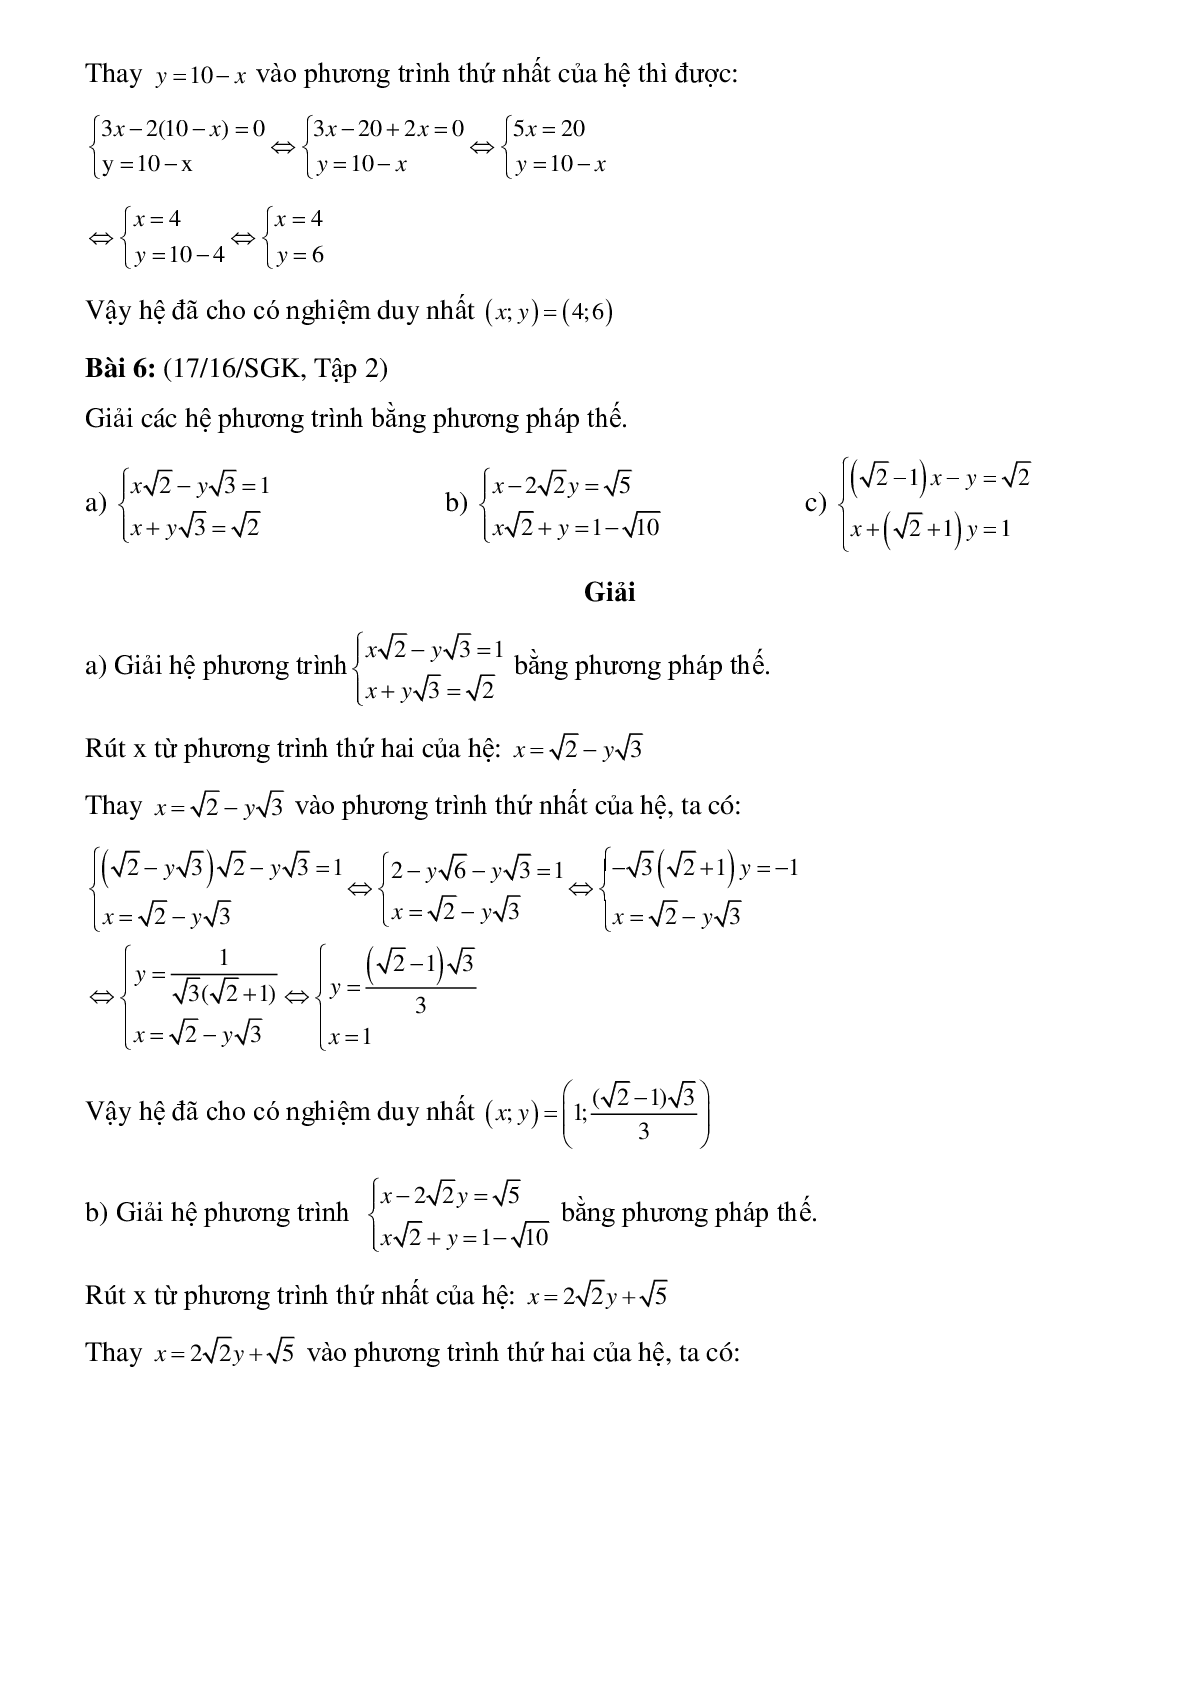 50 Bài tập Giải hệ phương trình bằng phương pháp thế (có đáp án)- Toán 9 (trang 8)